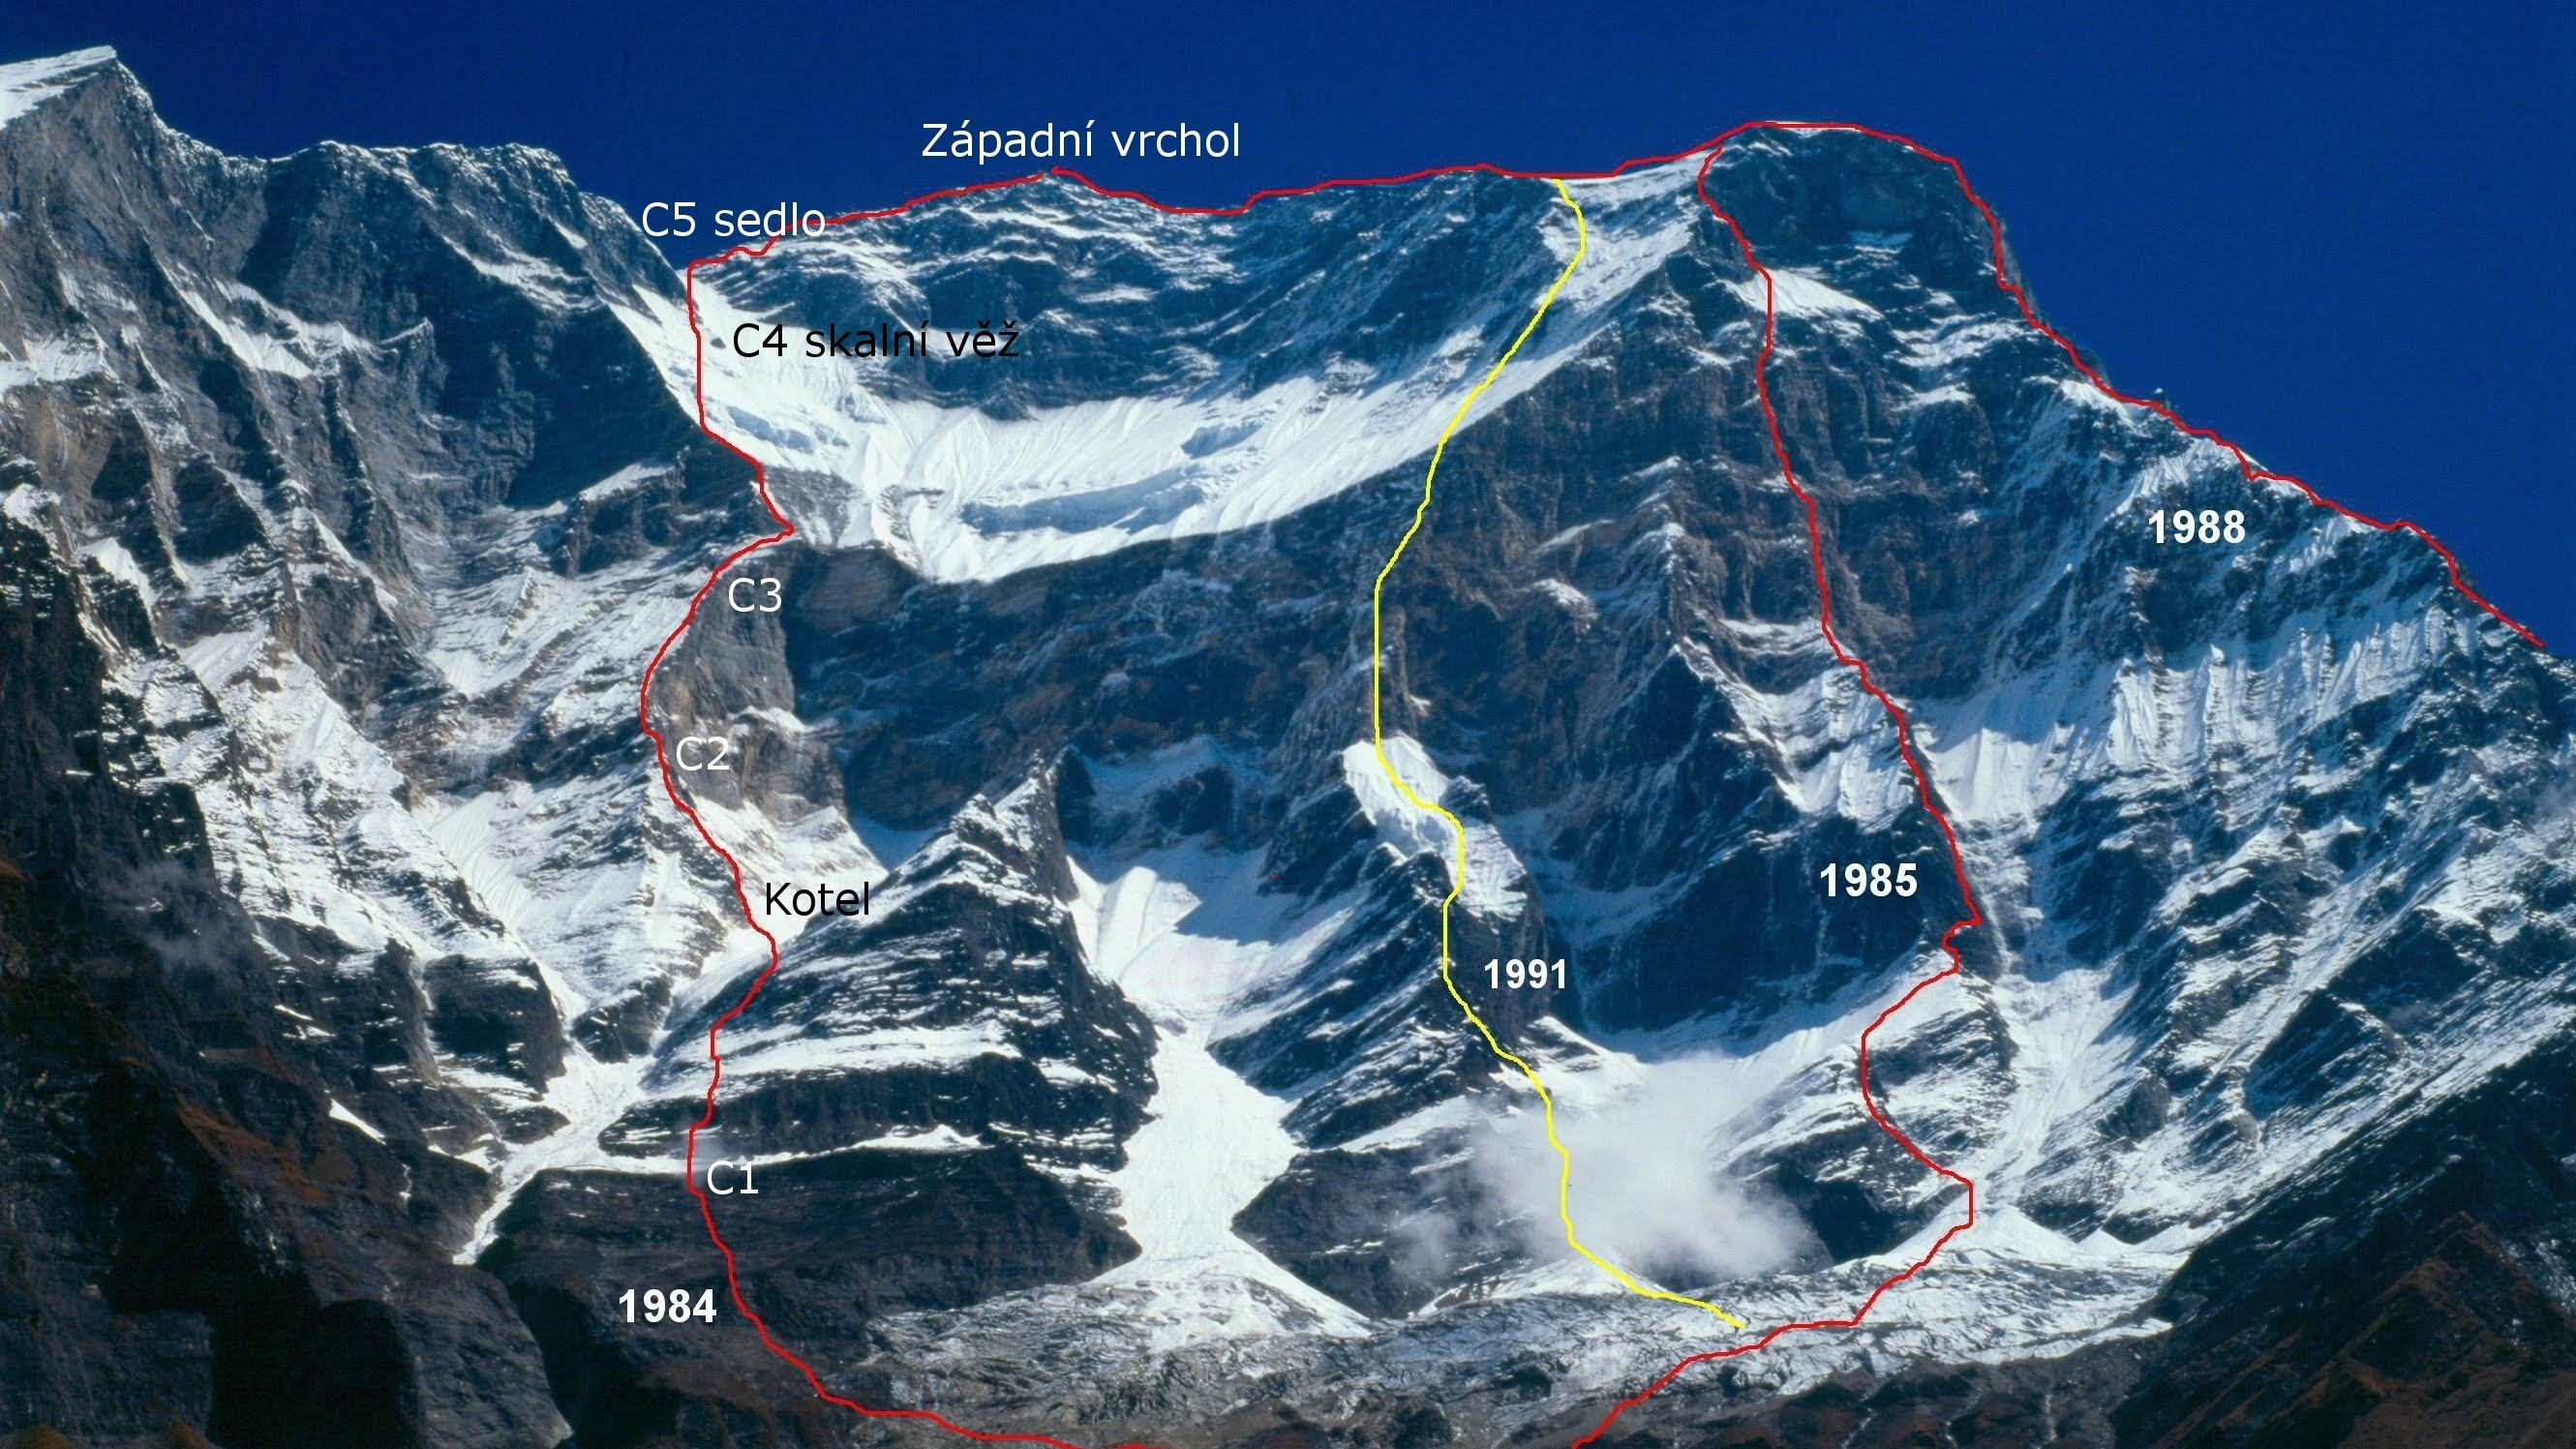 Юго-Западный контрфорс восьмитысячника Дхаулагири (Dhaulagiri, 8167 м) 1988 года - линия красного цвета, крайняя справа